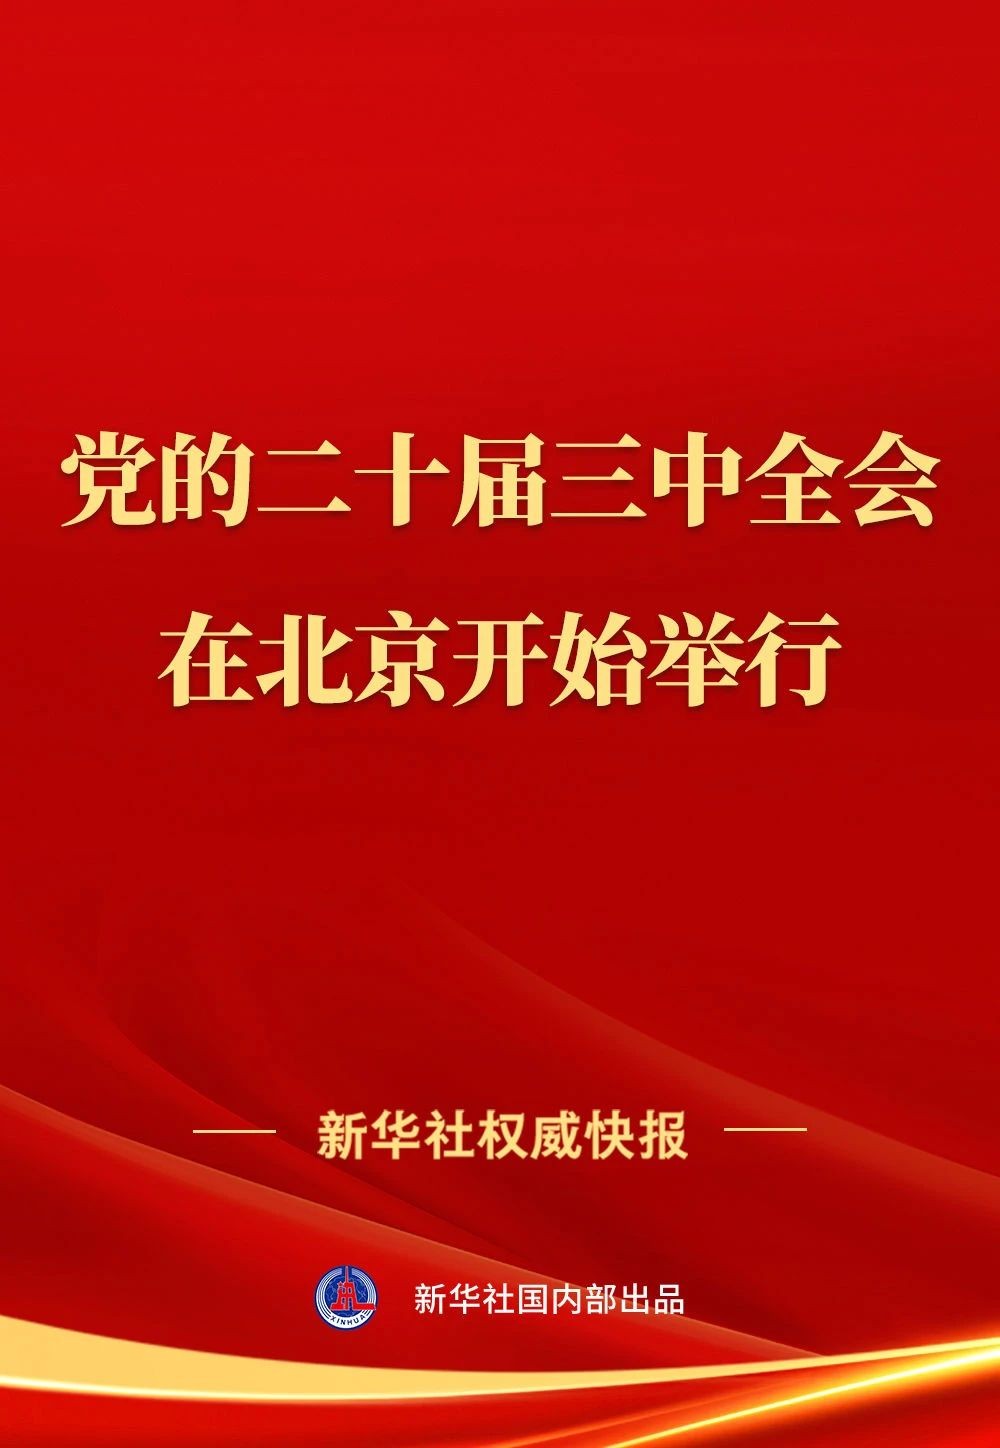 要闻┃中国共产党第二十届中央委员会第三次全体会议在北京开始举行